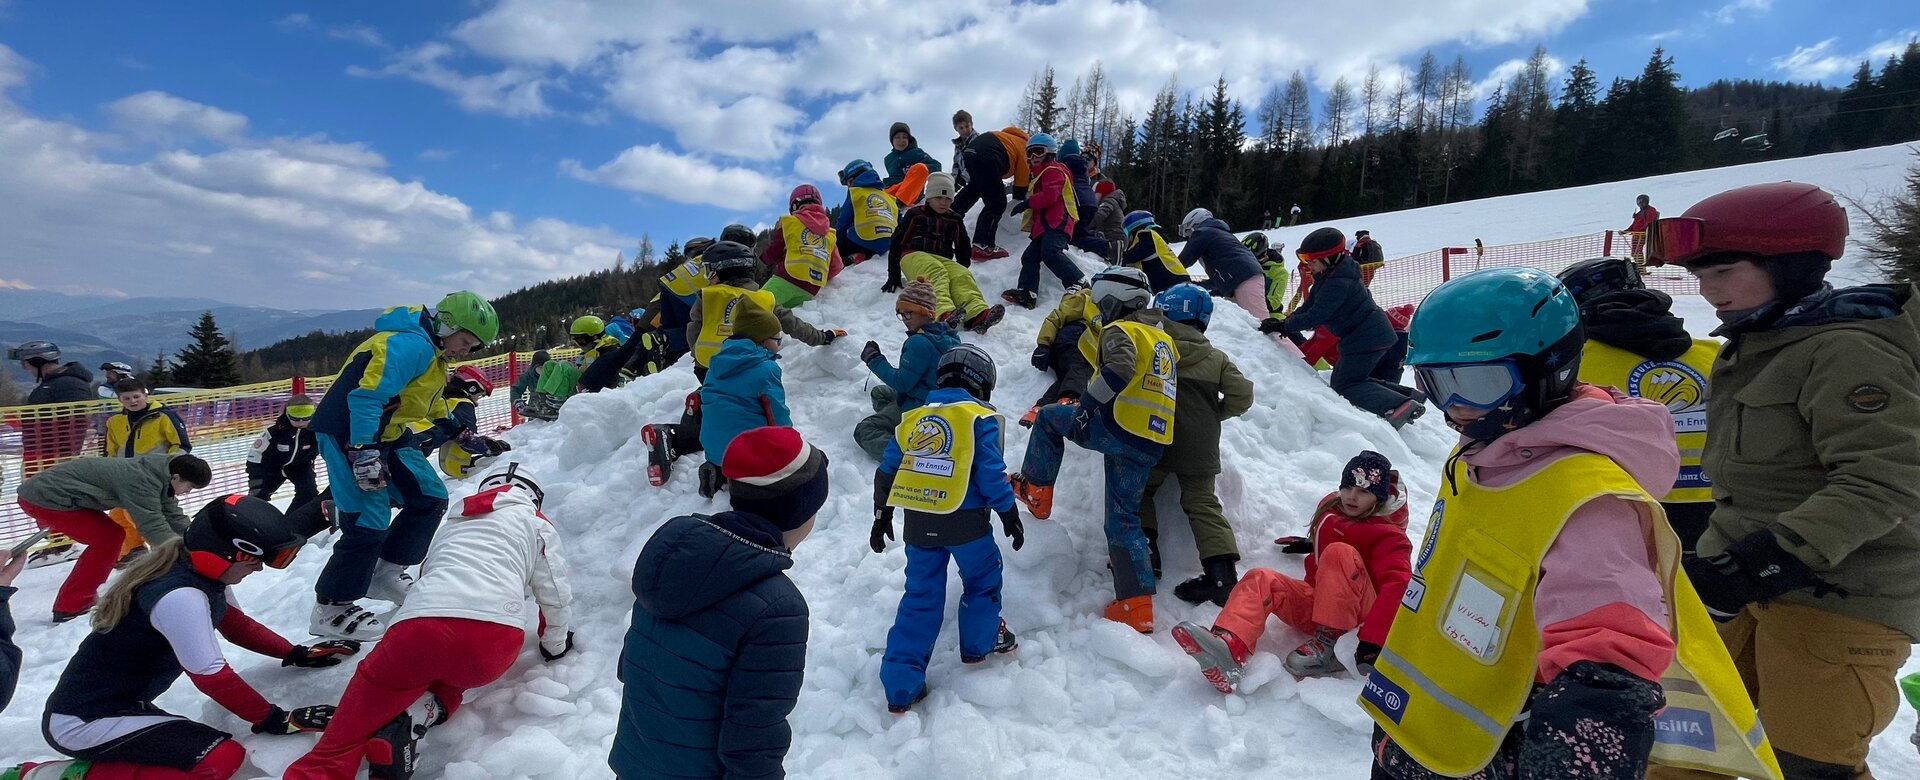 Viele Kinder in Skianzug butteln auf einem Hügel nach Ostereiern. | © Hauser Kaibling